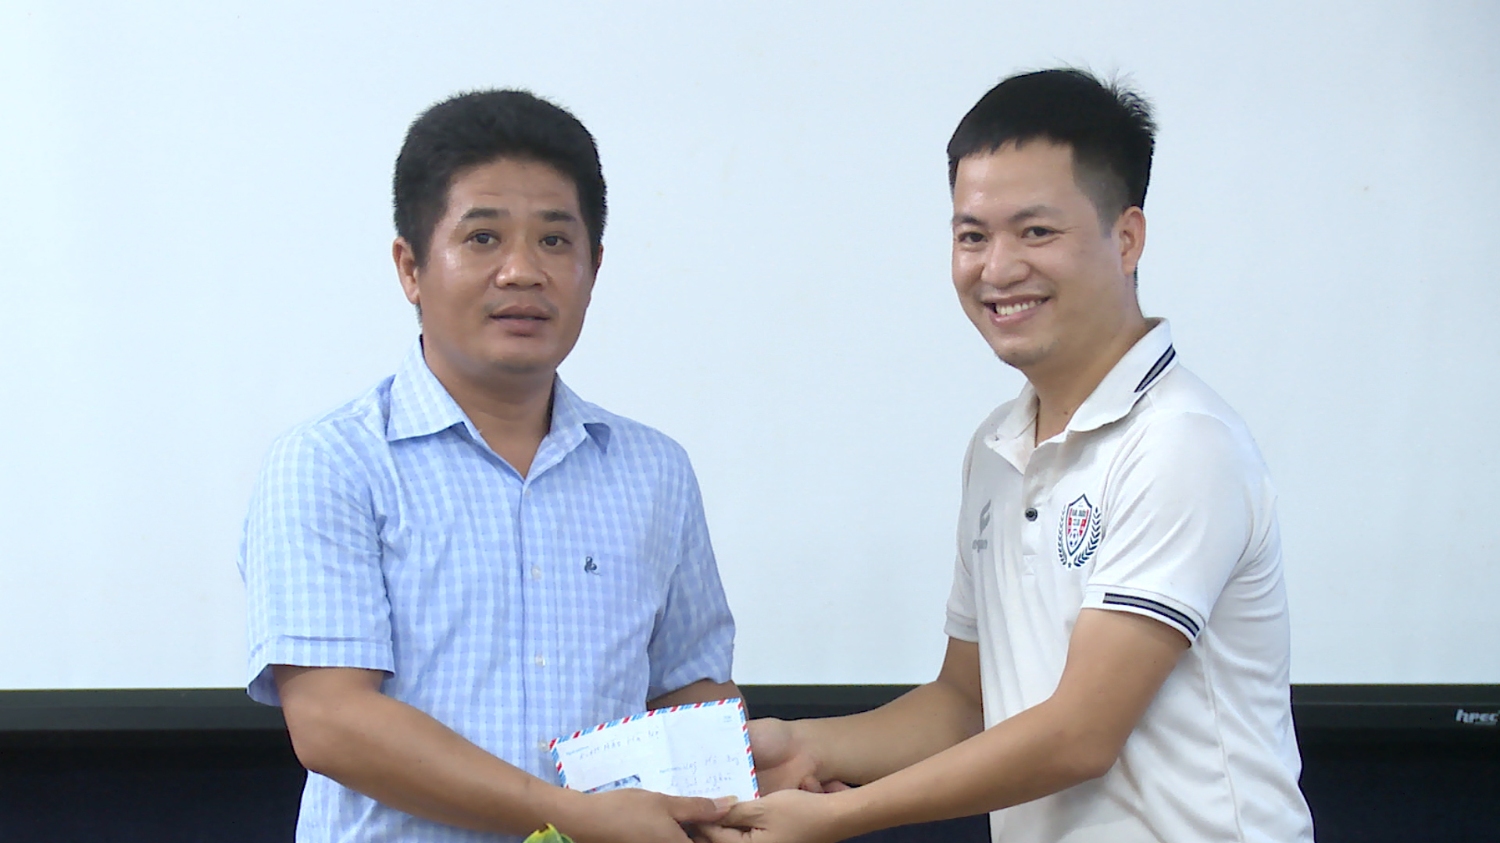 Cửa hàng kính mắt Hà Nội tại thị xã Ba Đồn đã quyên góp 2 triệu đồng vào quỹ với mong muỗn hỗ trợ một phần kinh phí giúp các em học sinh nghèo vượt khó, vươn lên trong học tập